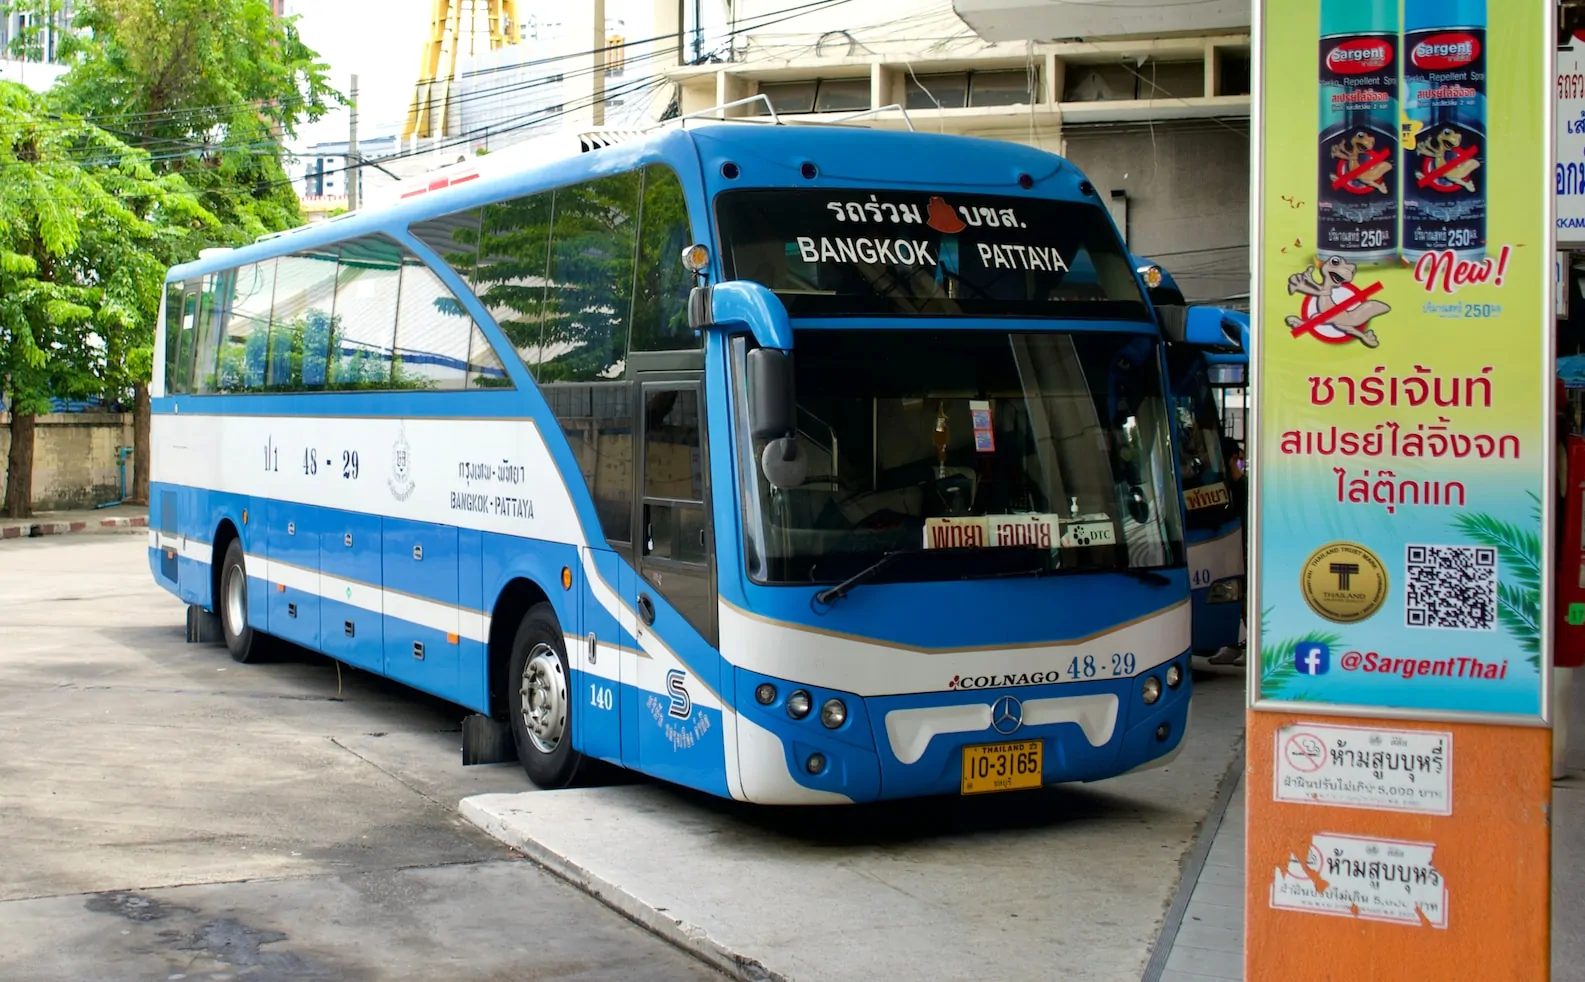 Transportbus i Thailand: Billeder og information om offentlig transport i Thailand, inklusiv lokale busser og pendulkørsel.